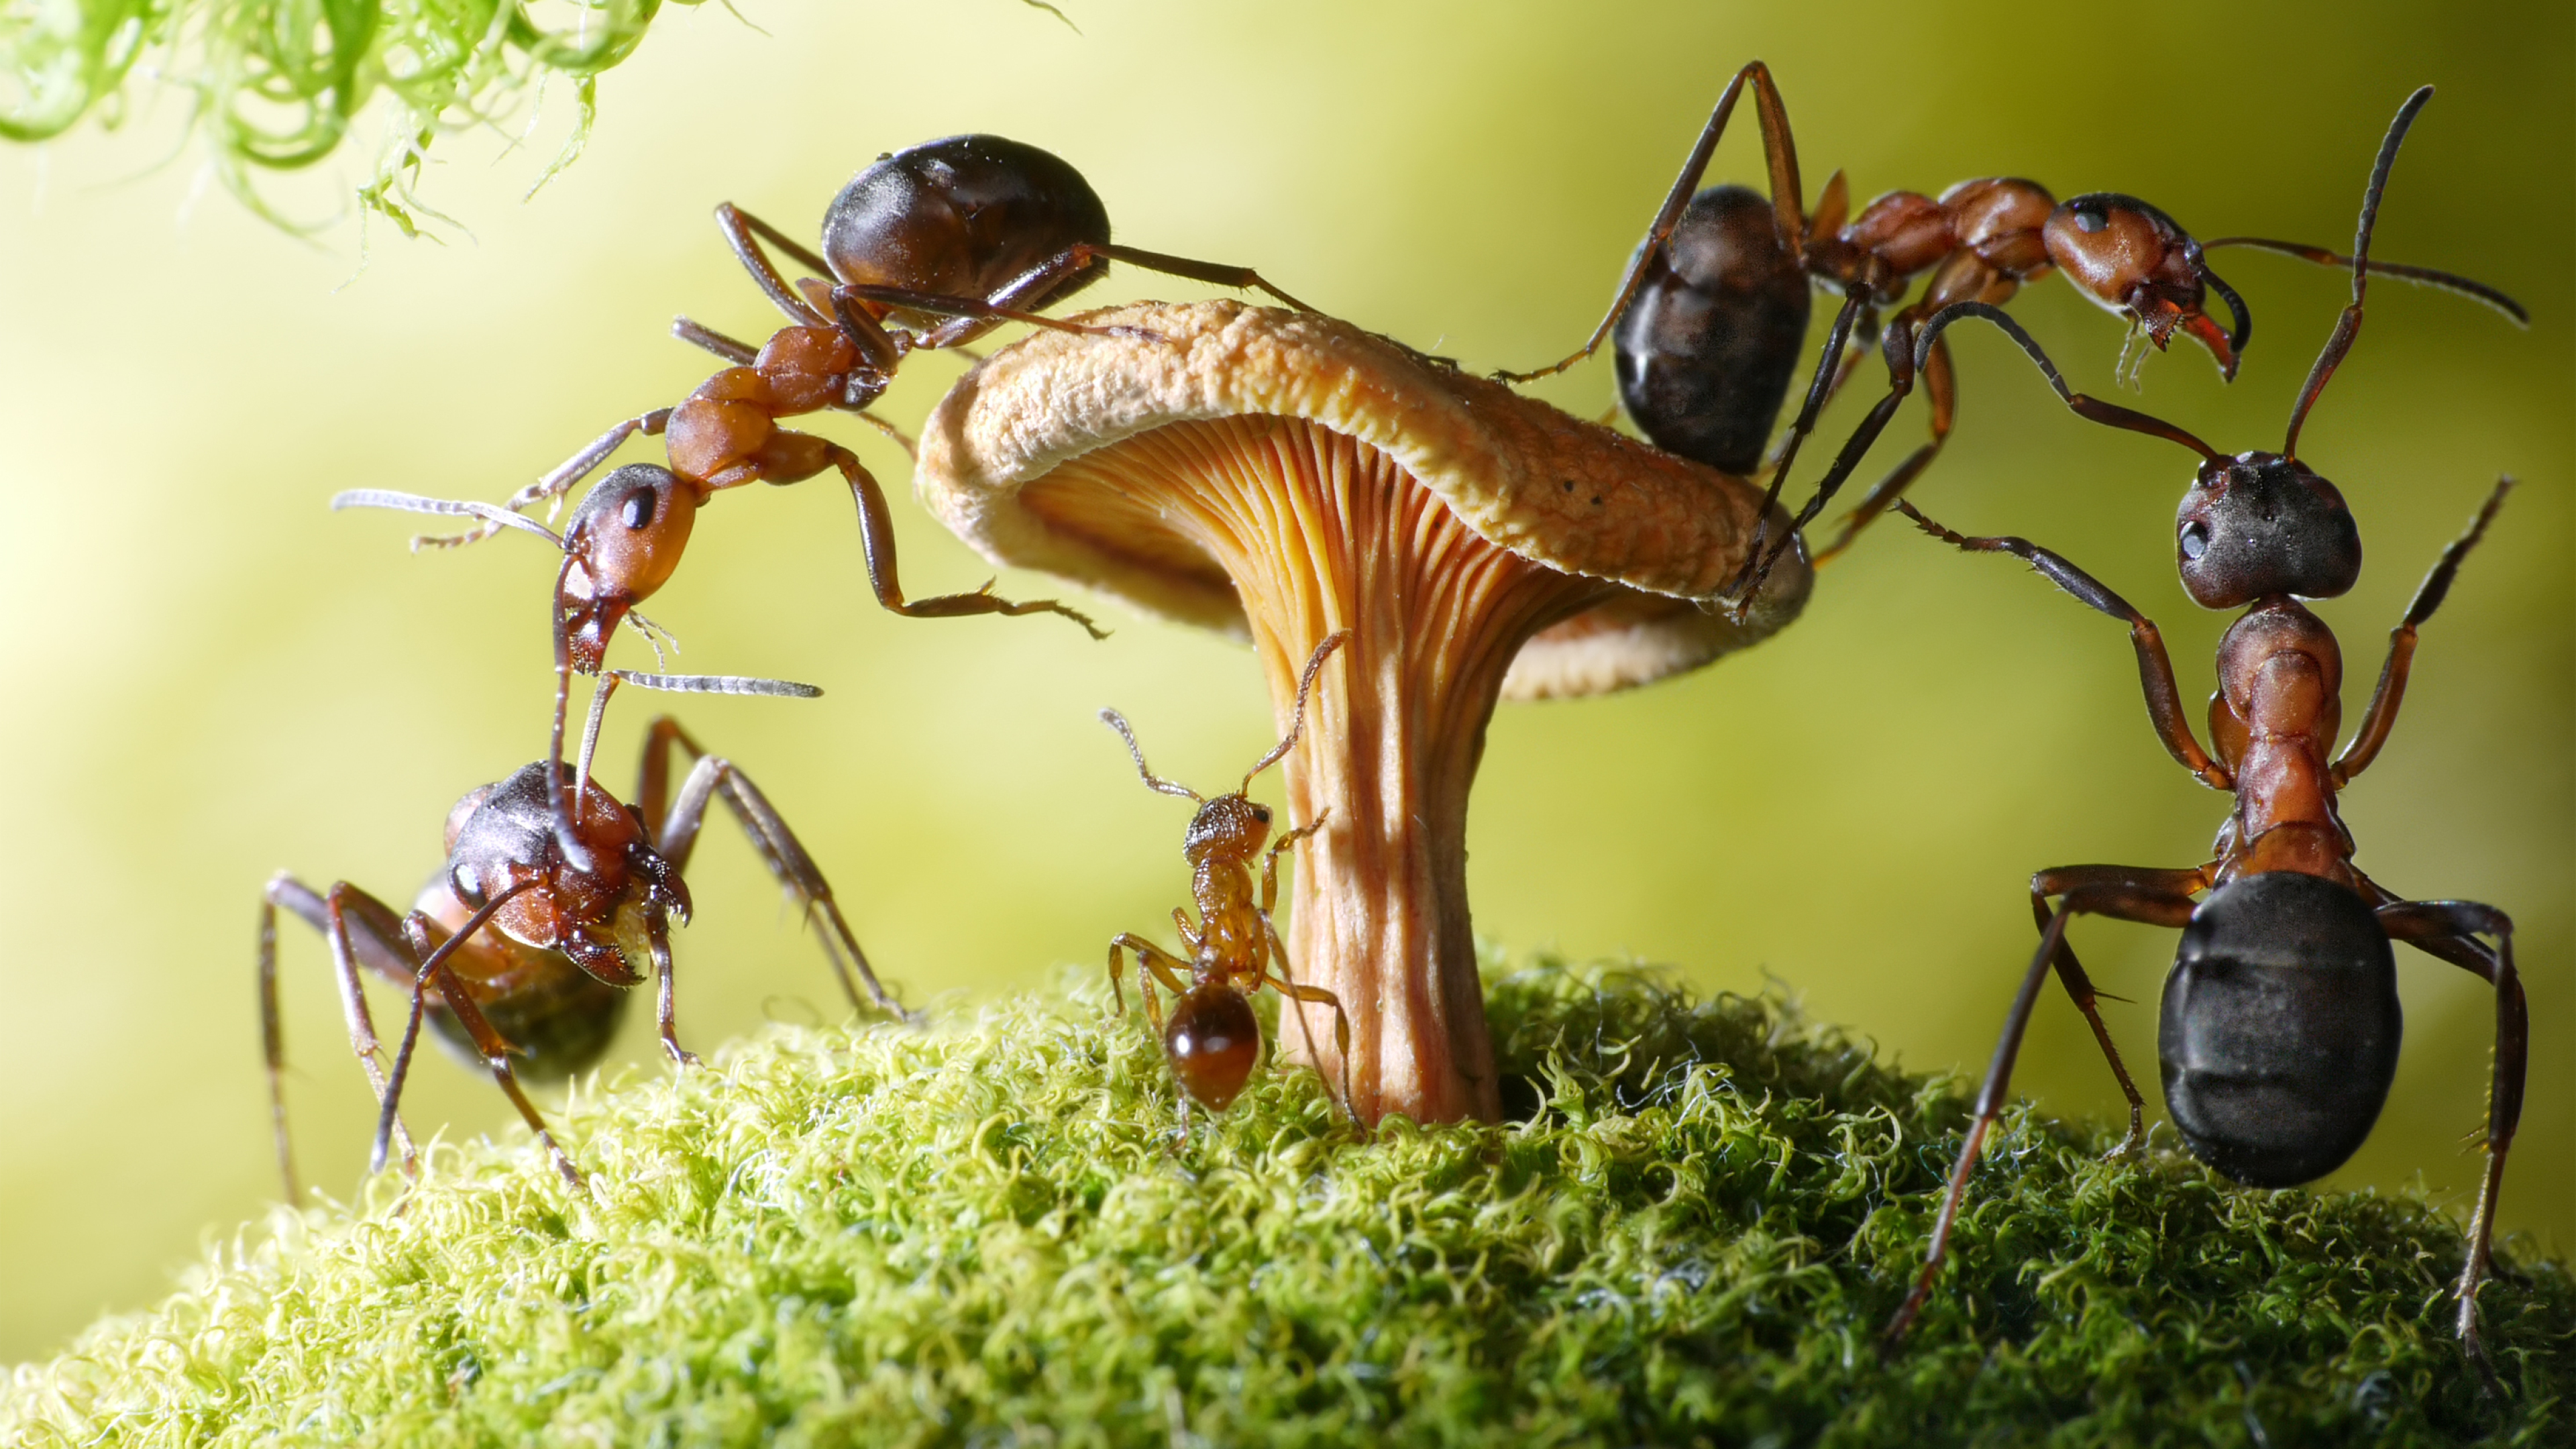 Картинки муравьев. Андрей Павлов фотограф муравьи. Бешеные муравьи Рэсберри. Муравьи листорезы выращивают грибы. Фараоновые муравьи Муравейник.